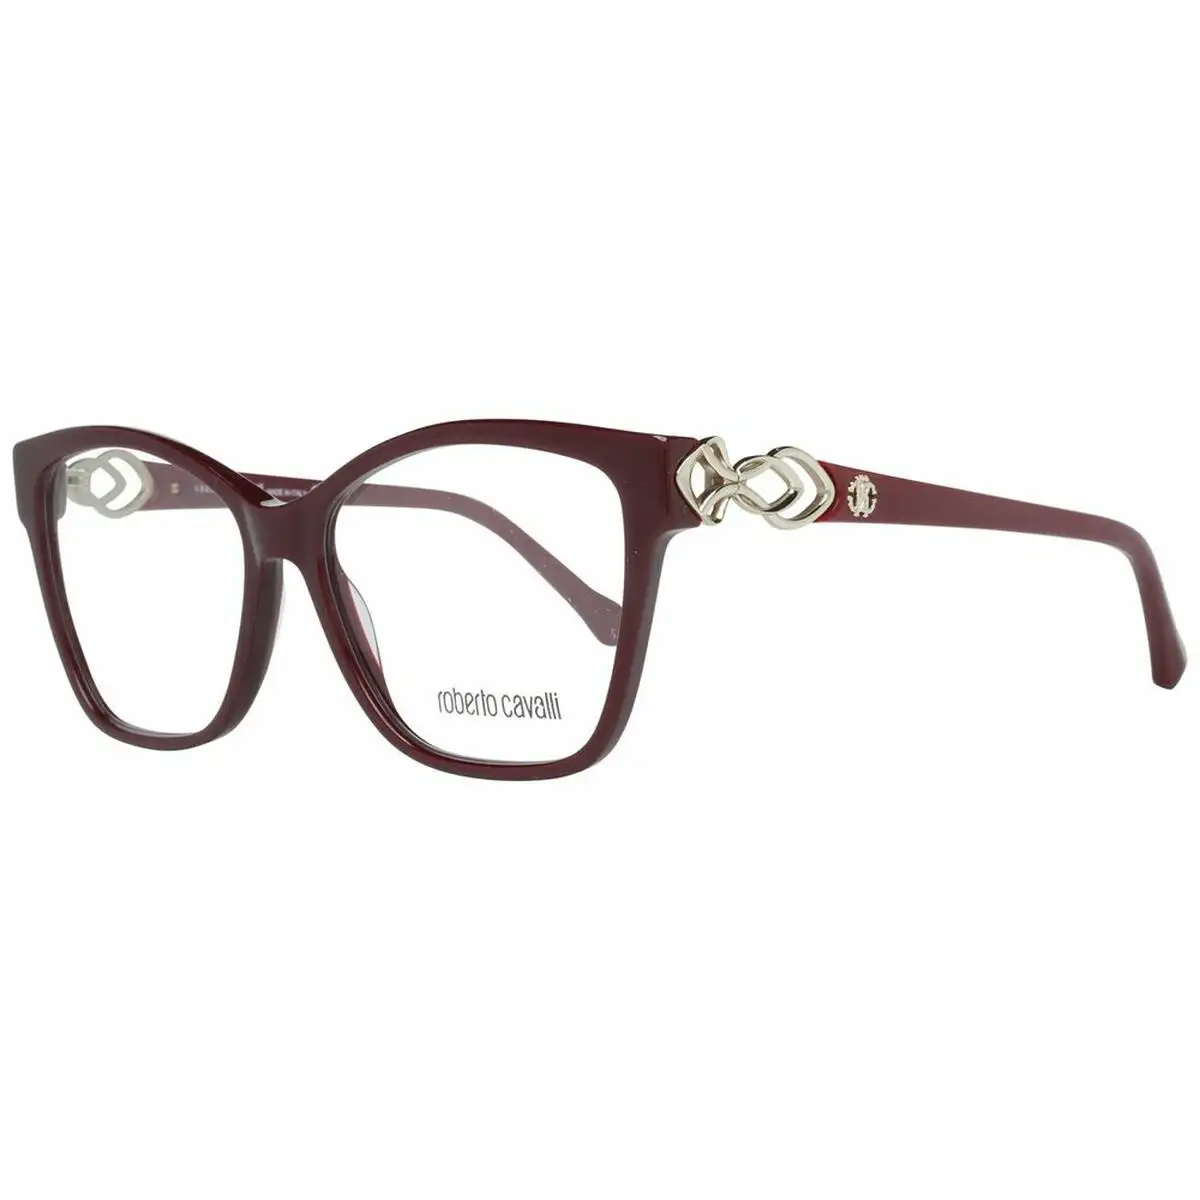 Monture de lunettes femme roberto cavalli rc5063 53069 o 53 mm _1434. DIAYTAR SENEGAL - L'Art du Shopping Éclairé. Parcourez notre catalogue et choisissez parmi des produits de qualité qui satisferont vos besoins et votre style.